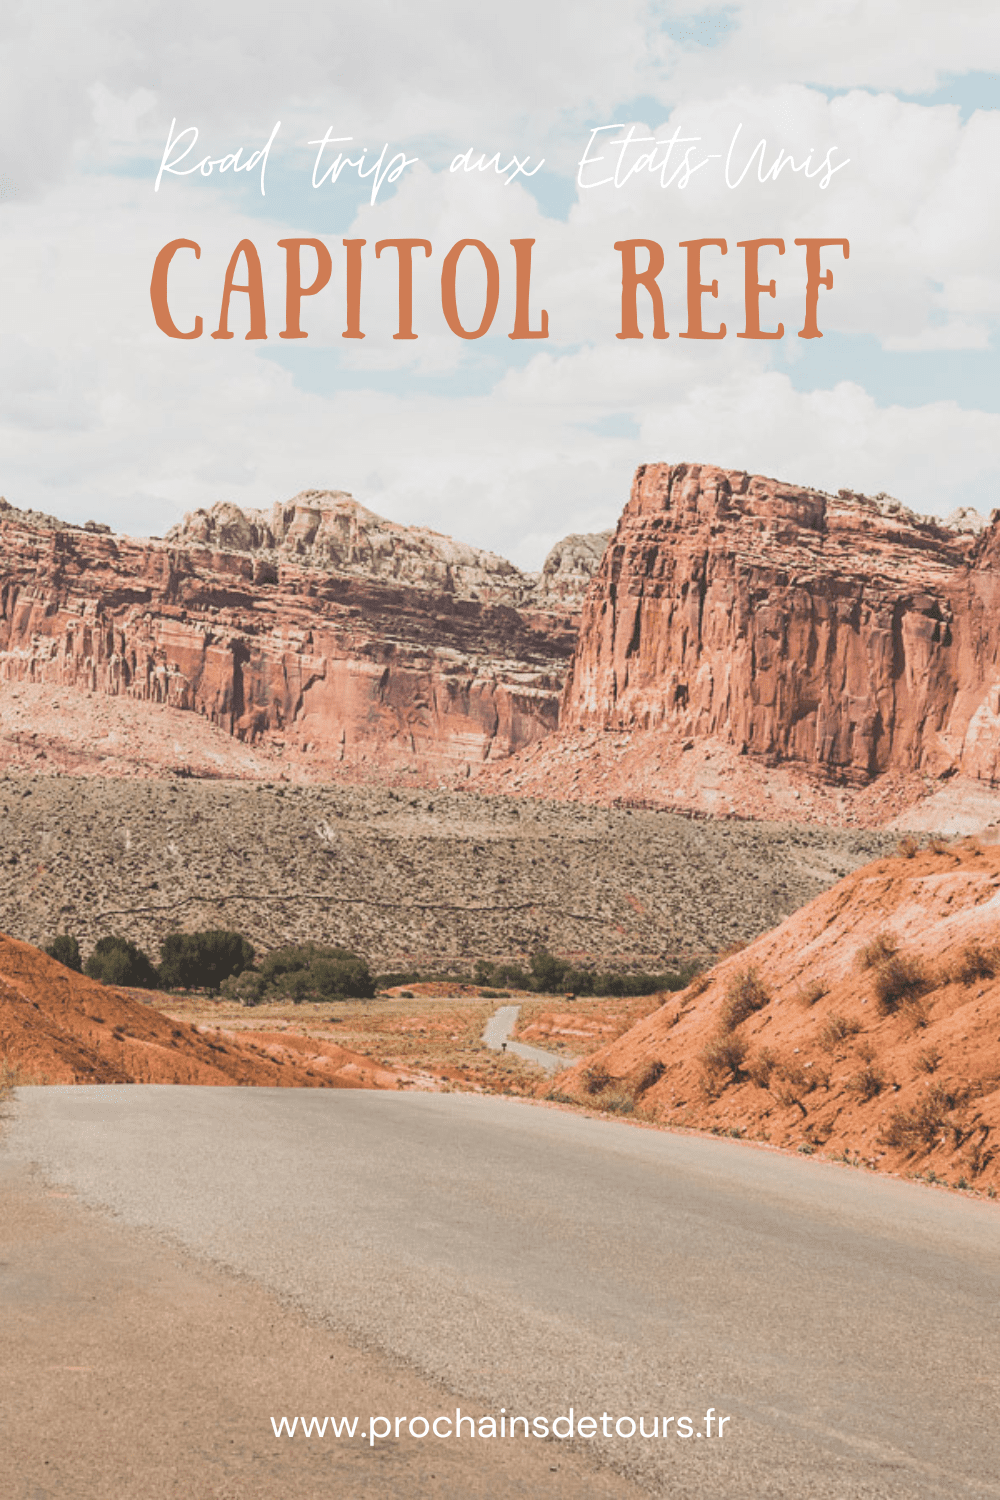 Embarquez pour un voyage d'exploration et d'aventure au Capitol Reef National Park dans l'Utah. Des falaises de grès aux vastes prairies, ce road trip dans l'ouest américain vous emmènera dans un paradis de canyons cachés et de vues époustouflantes. Découvrez de superbes merveilles naturelles et des activités de plein air, et découvrez pourquoi Capitol Reef est le complément parfait à votre voyage dans l'Utah ! Lisez notre article pour en savoir plus sur tout ce qu'il y a à voir là-bas.